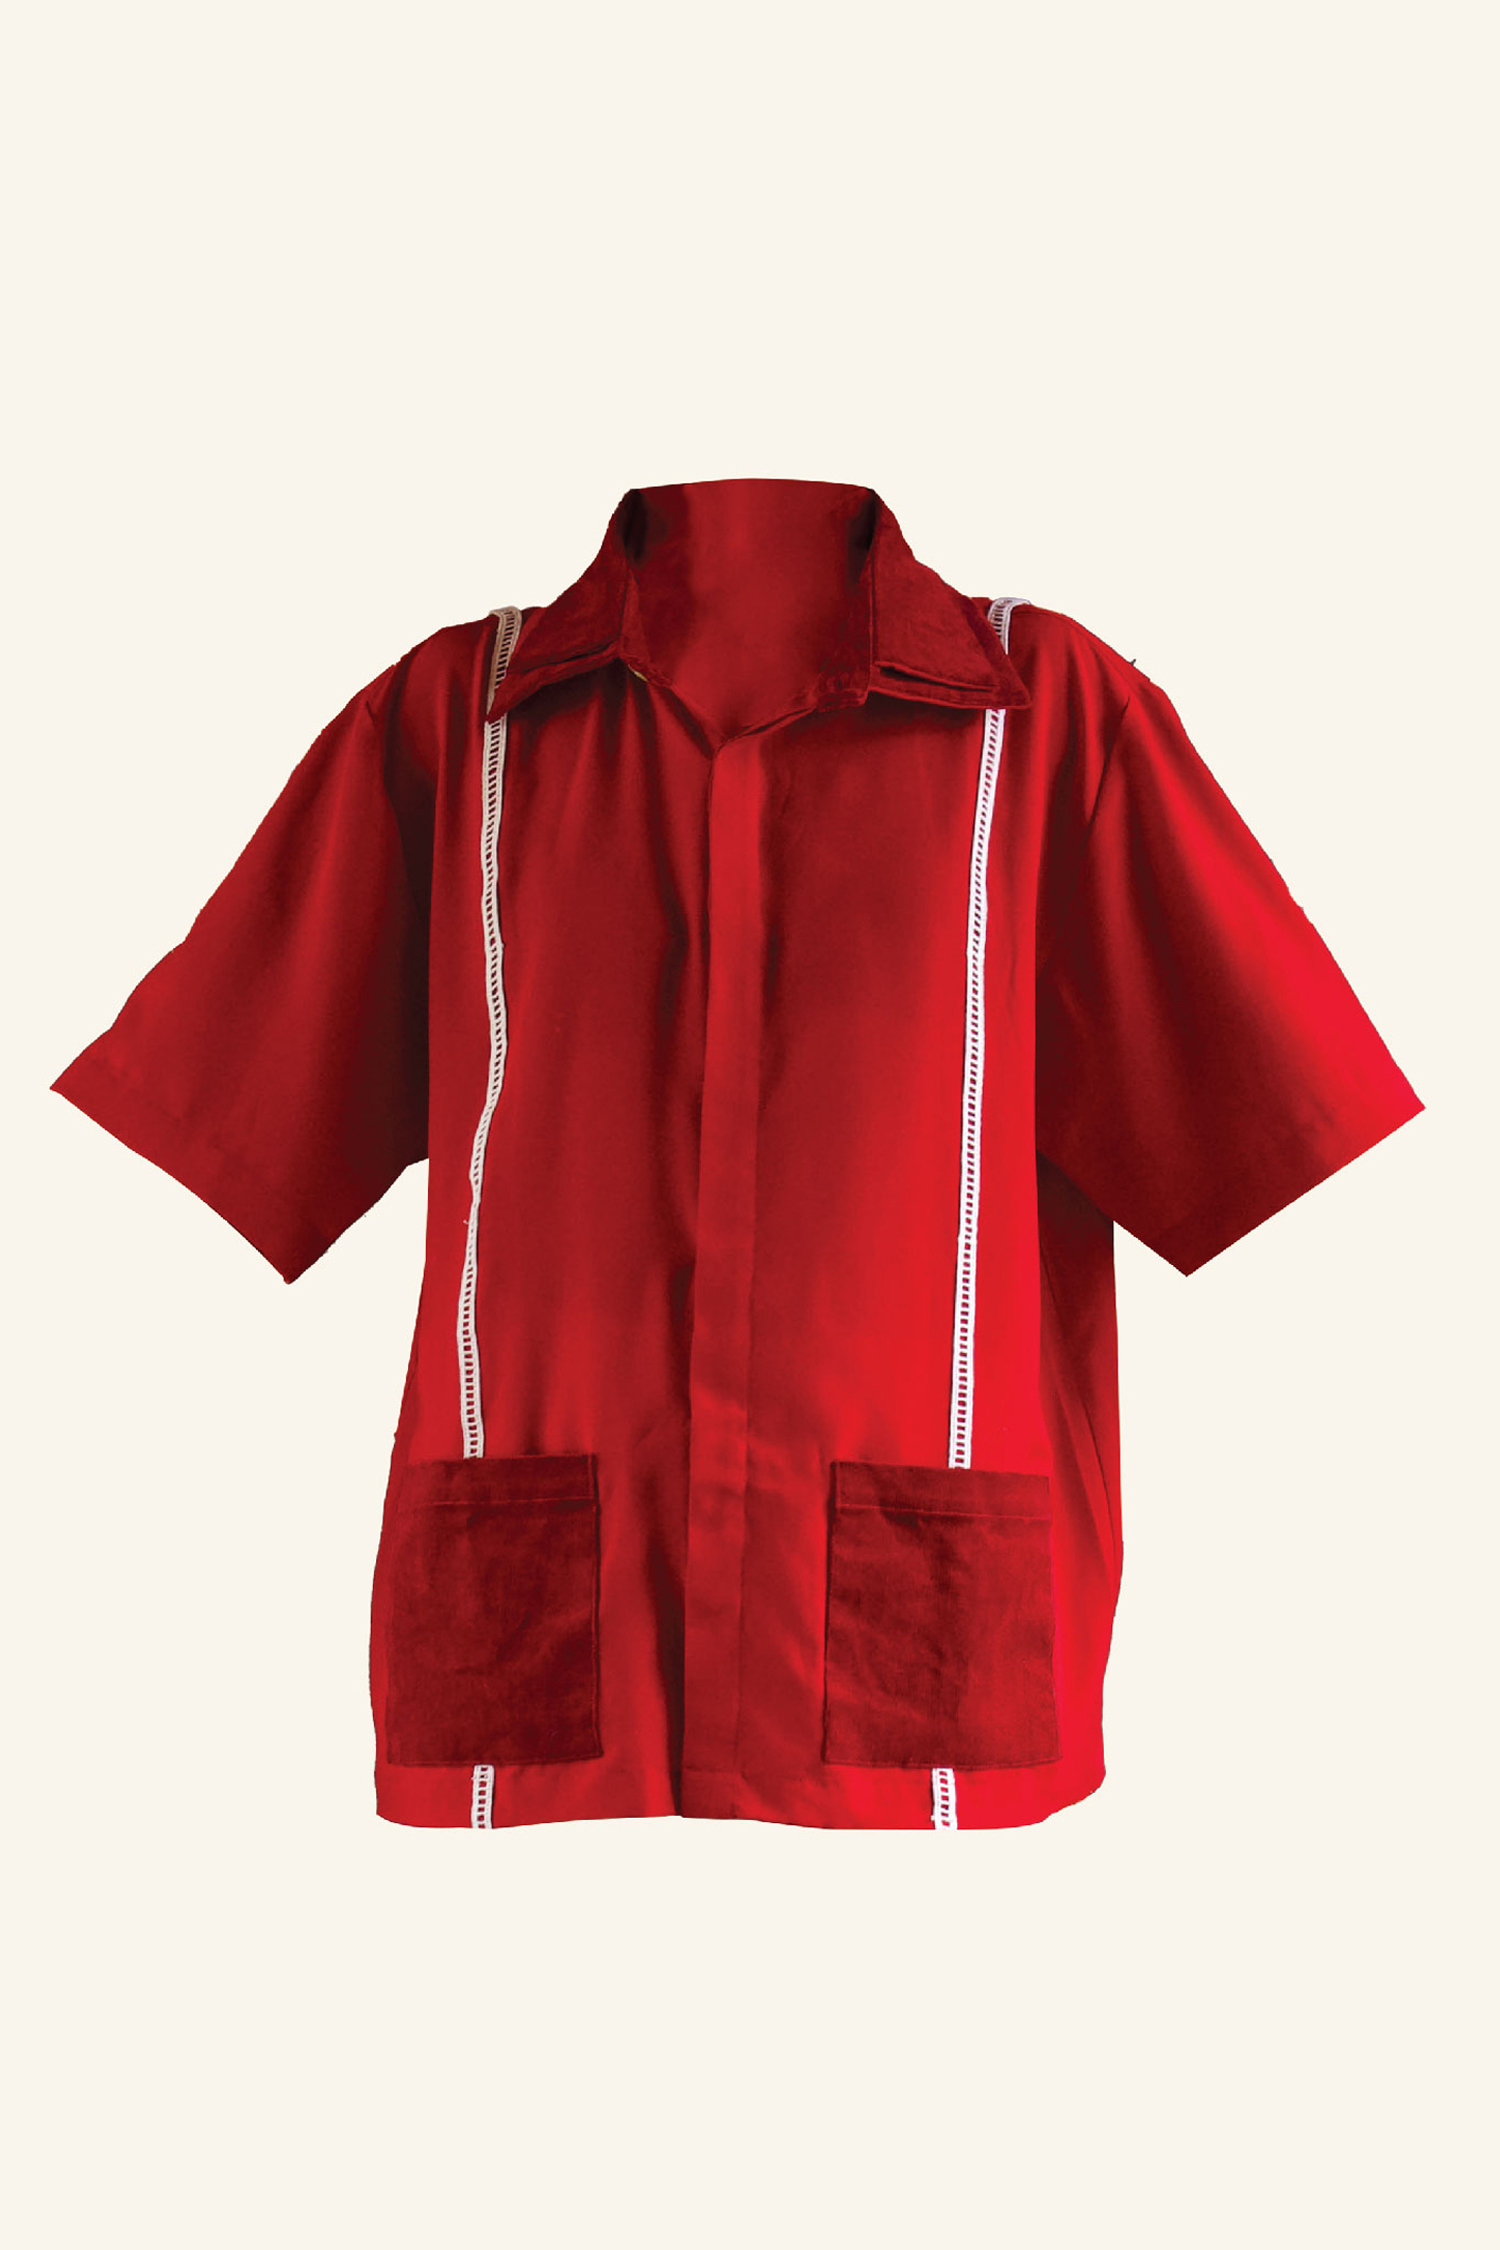 SATUSAJA Short-Sleeve Shirt Red